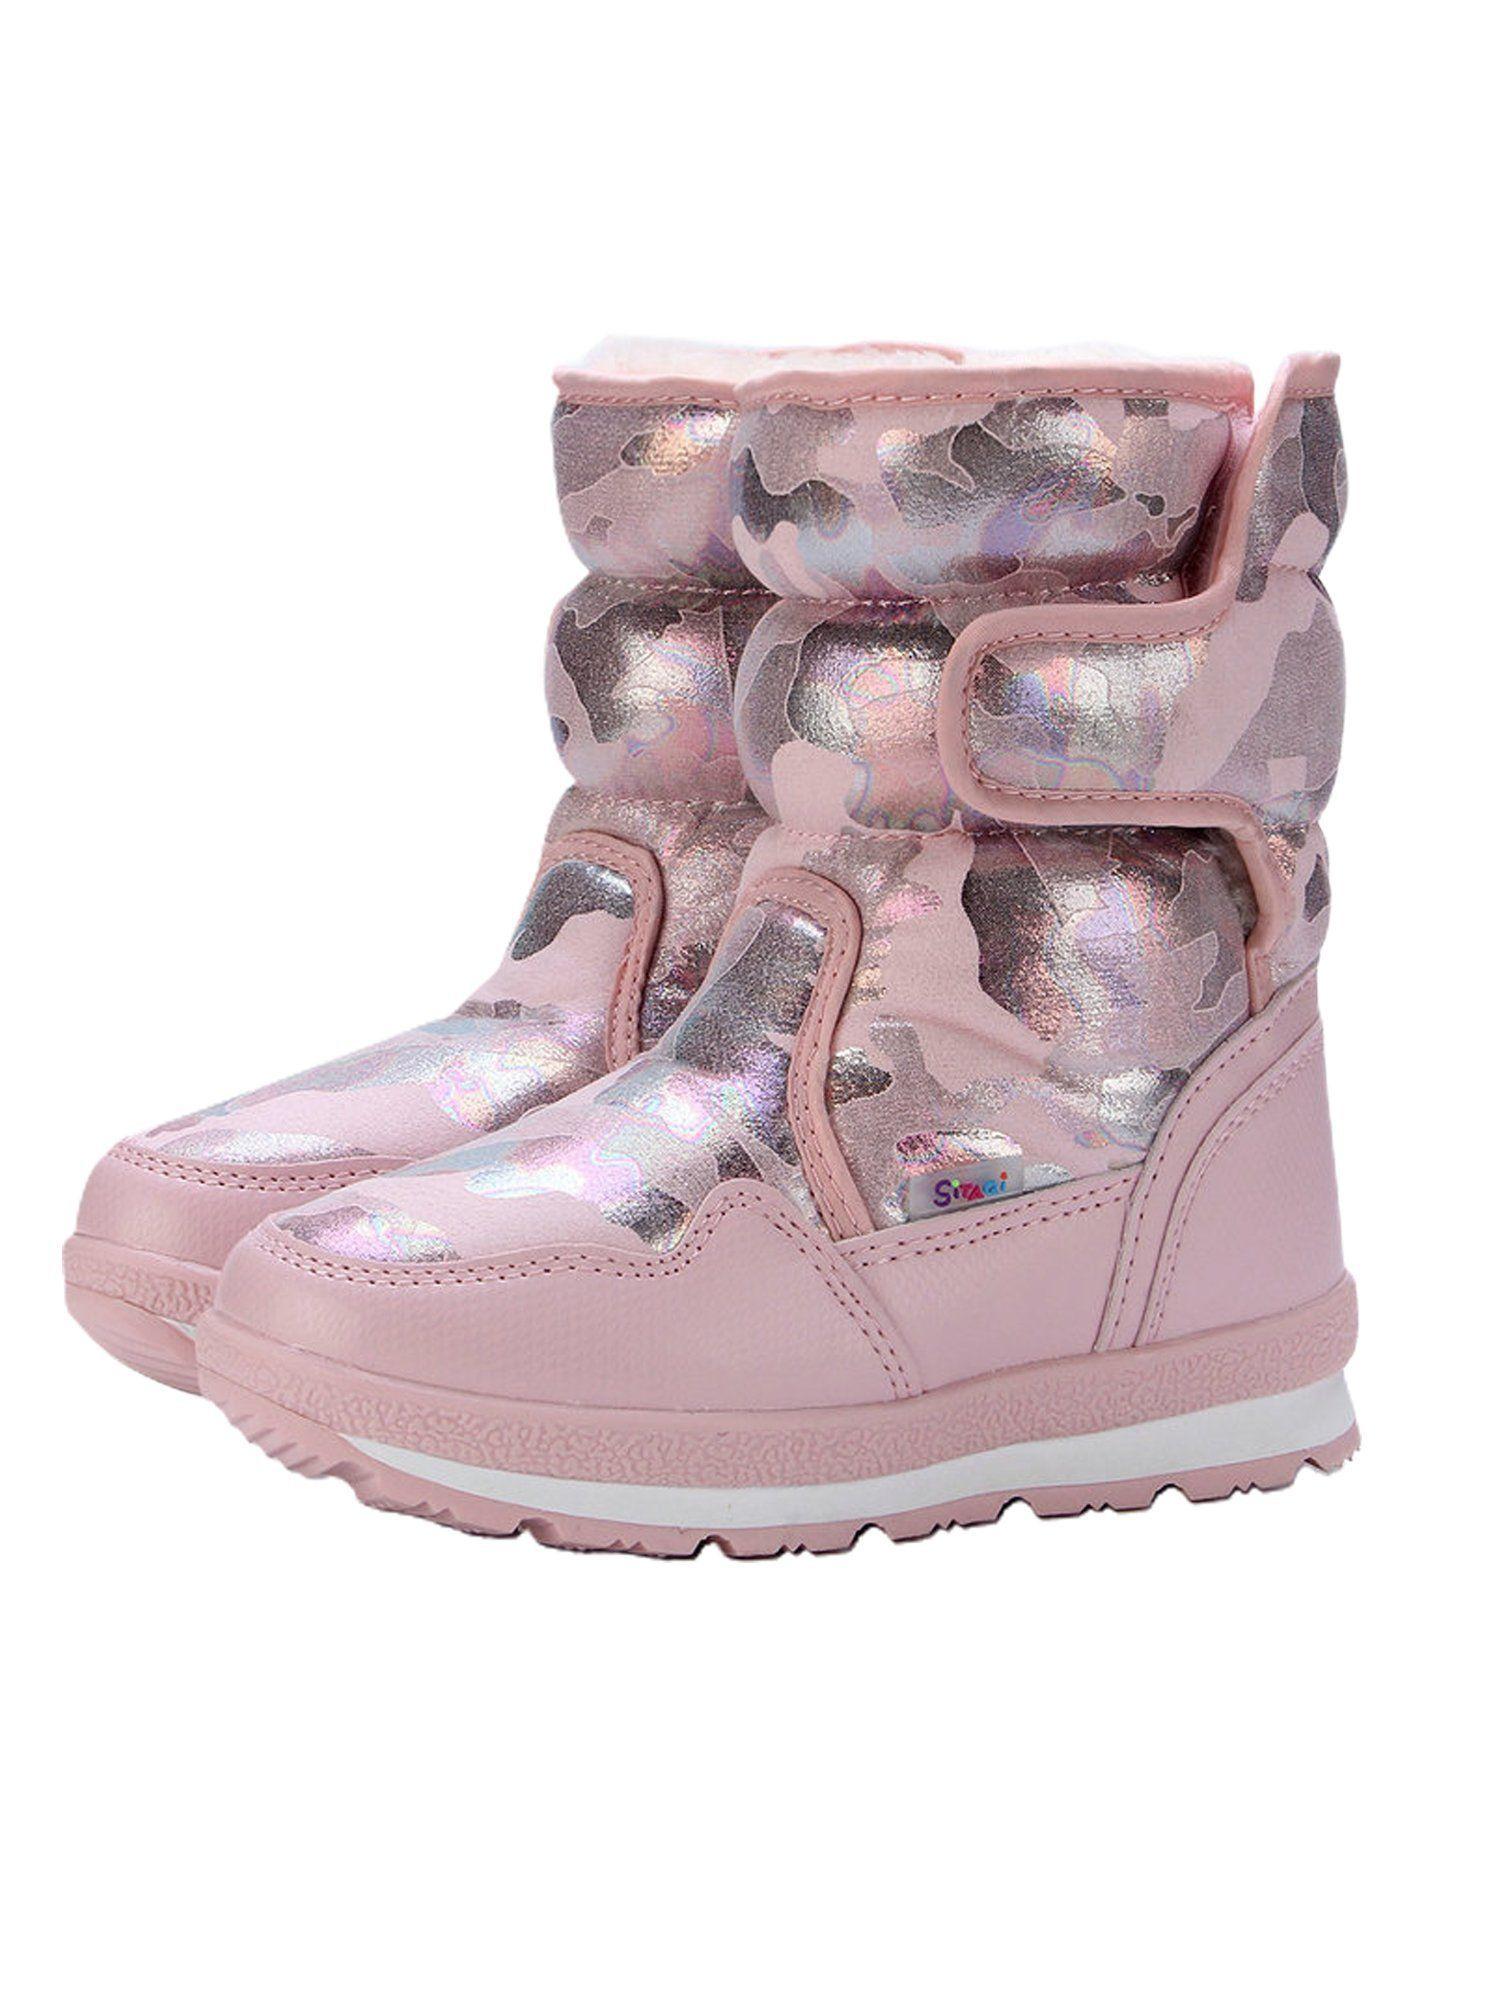 pink-glam-kids-winter-snowboots